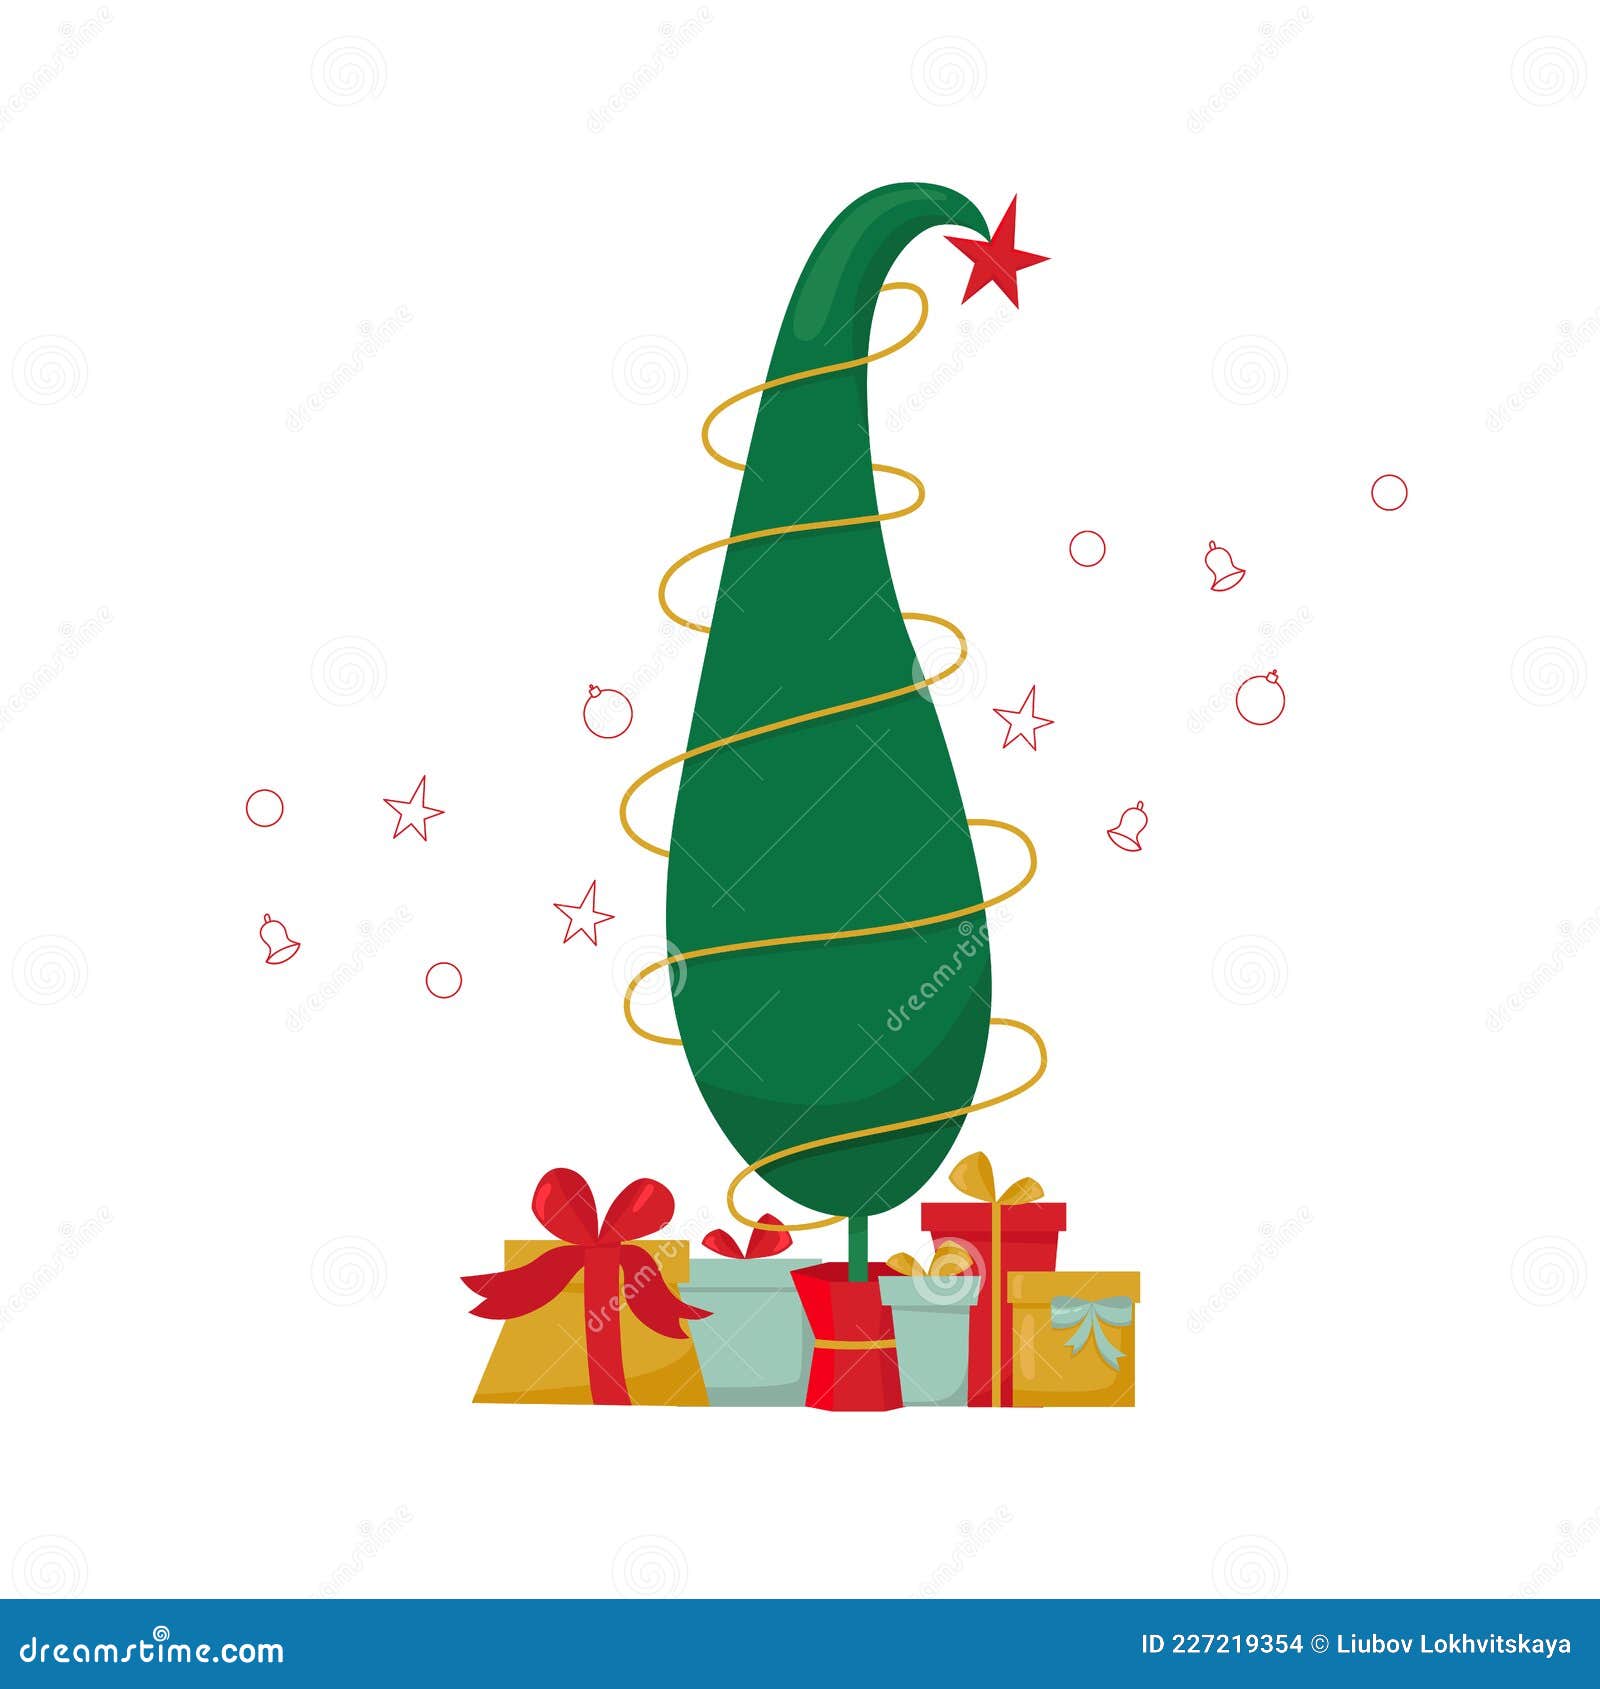 Được lấy cảm hứng từ chú Grinch trộm giáng sinh nổi tiếng, cây thông Giáng sinh của bạn sẽ trở nên độc đáo và thú vị hơn với thiết kế Grinch đáng yêu. Hãy xem hình ảnh và cảm nhận sự tinh tế của thiết kế này.